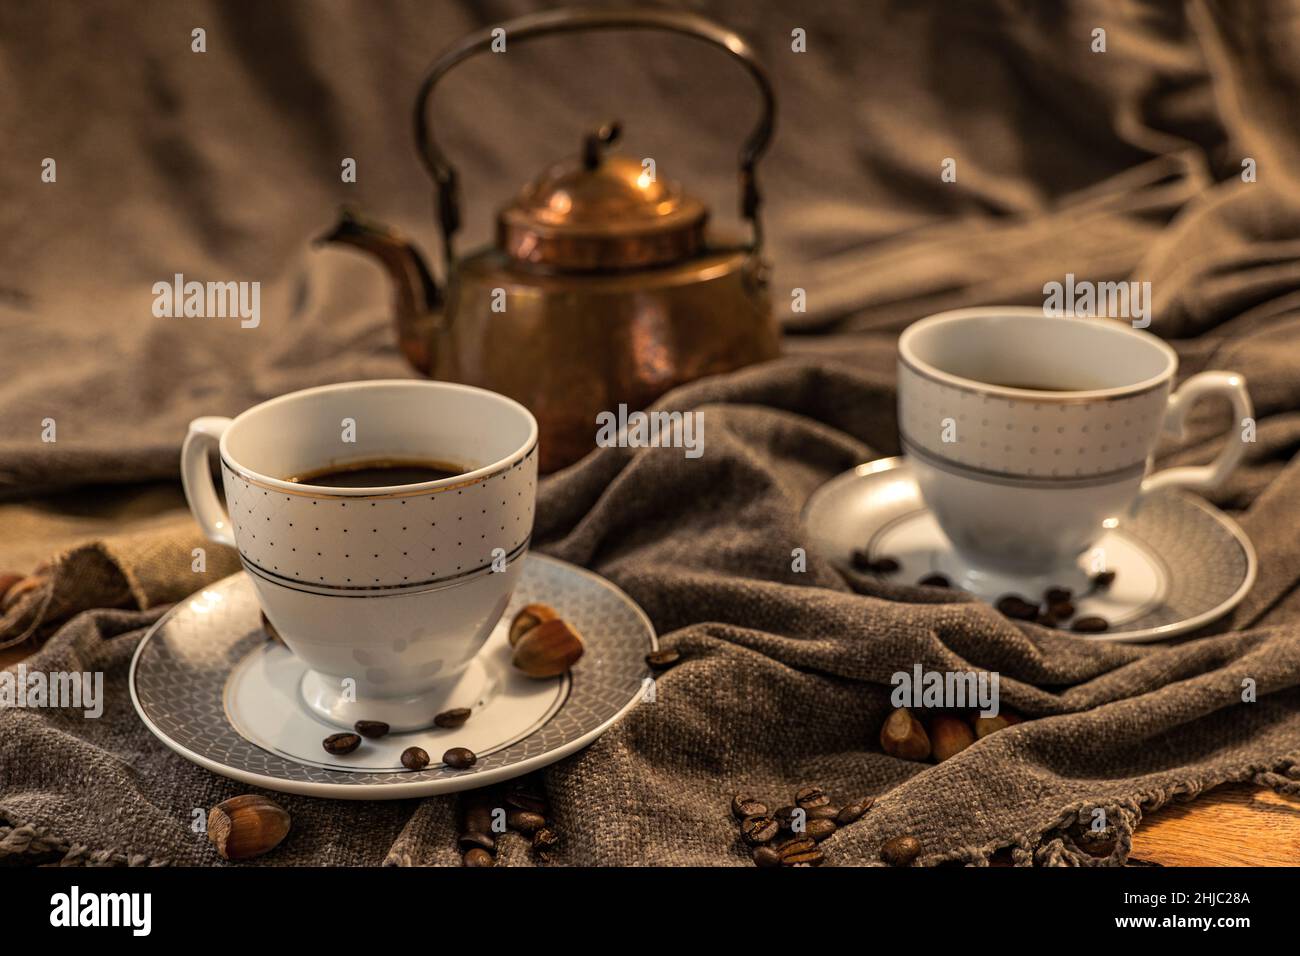 Deux tasses de café, théière en cuivre à l'arrière-plan, nuances de marron et de gris, tissu en nuances de gris Banque D'Images